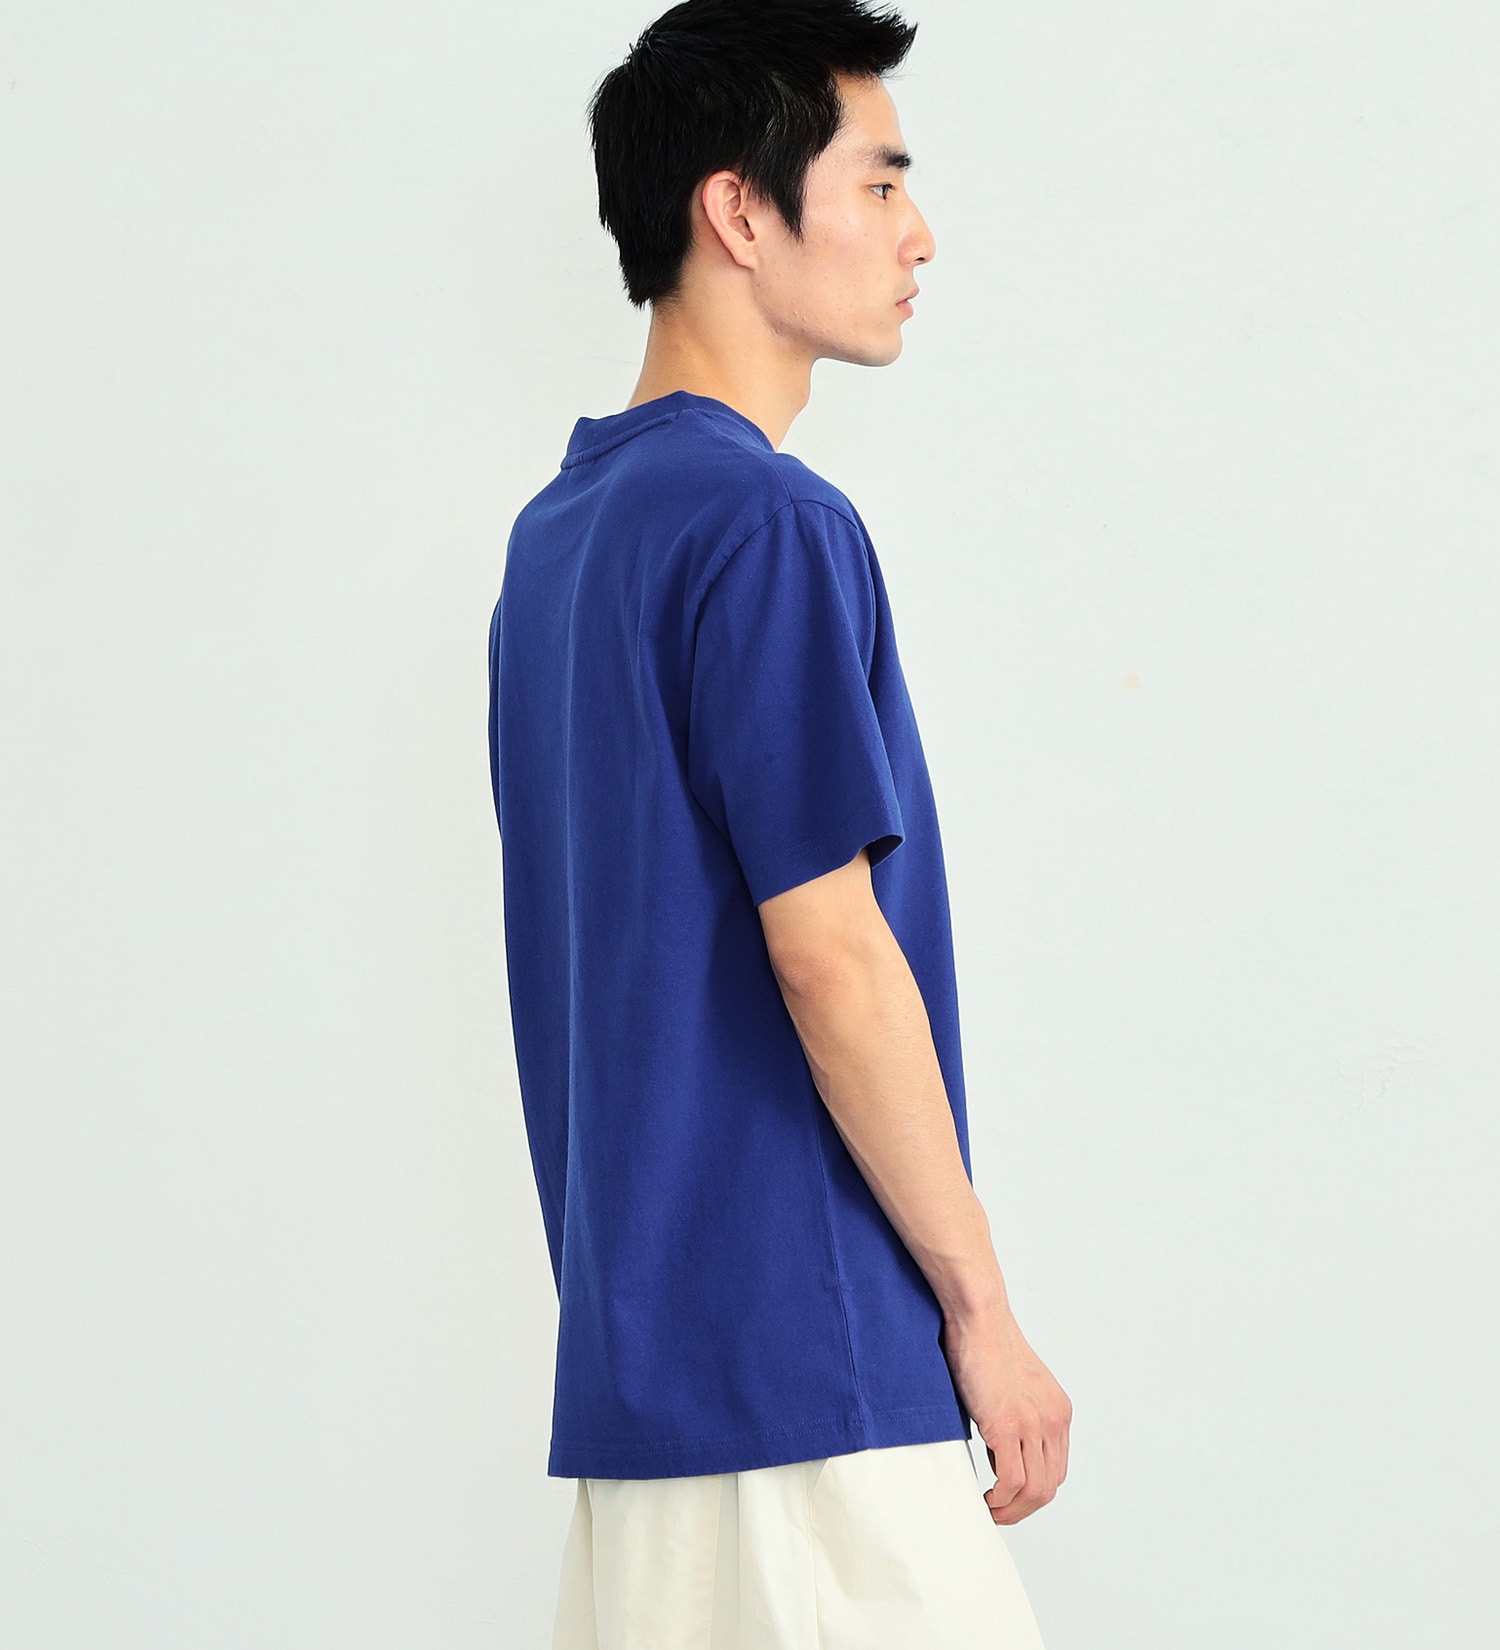 ALPHA(アルファ)のARMYプリントTシャツ 半袖|トップス/Tシャツ/カットソー/メンズ|ブルー